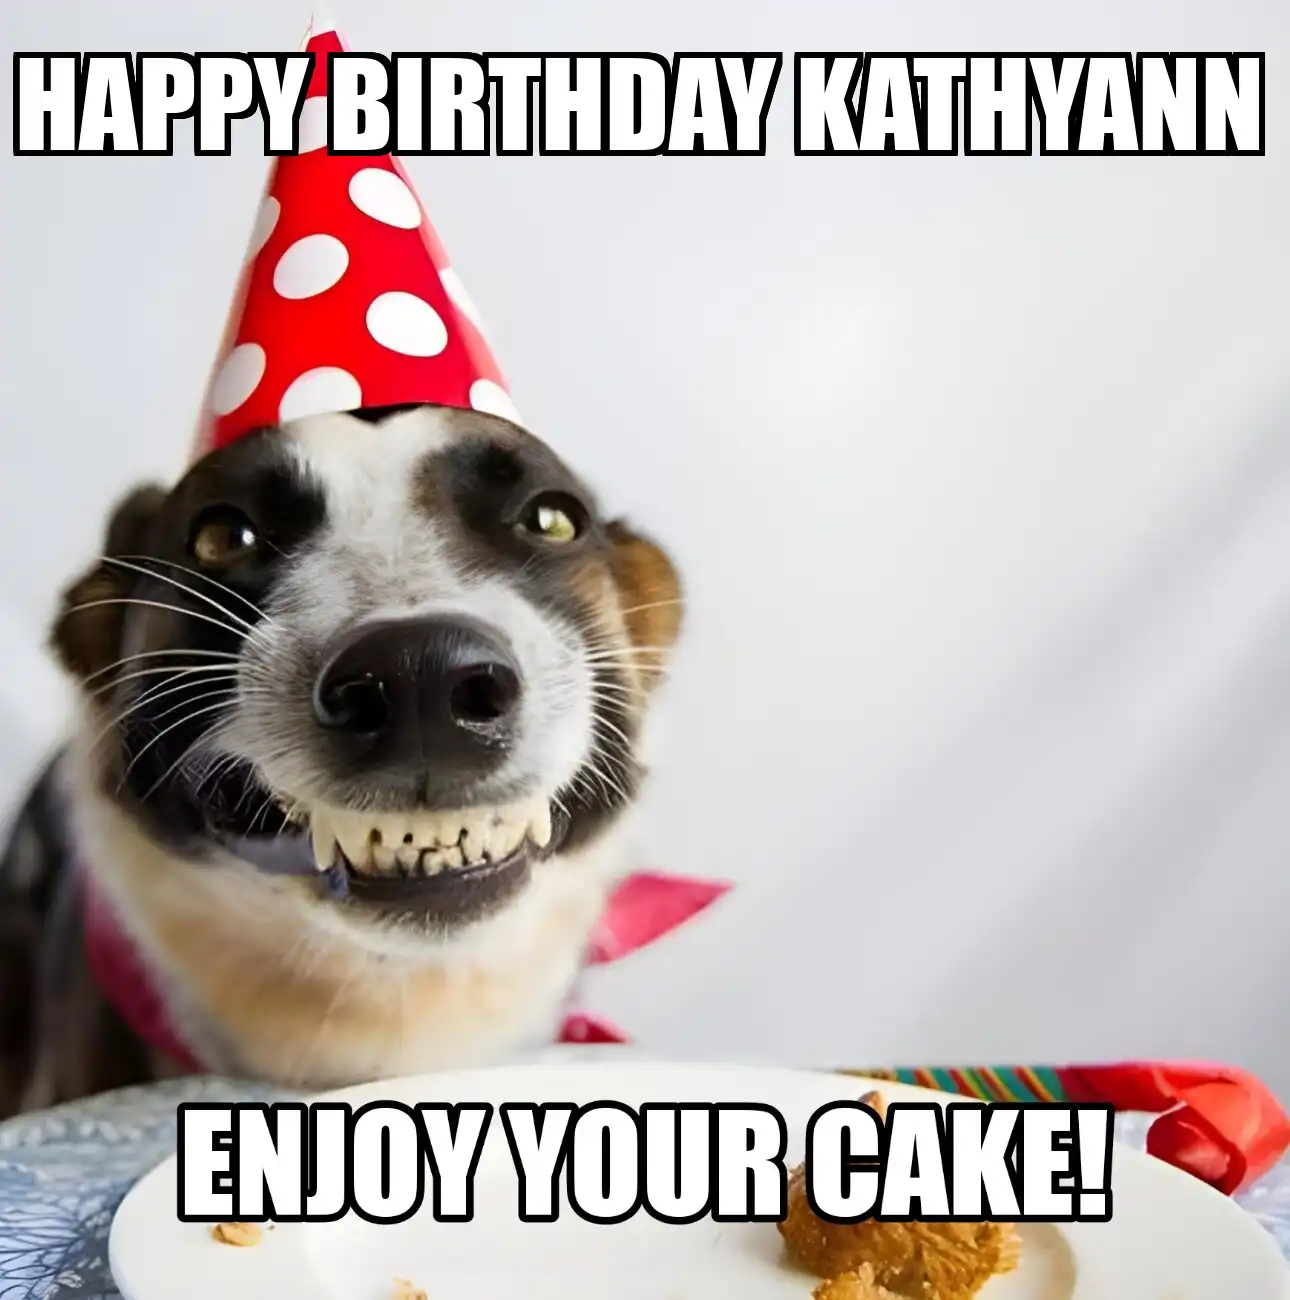 Happy Birthday Kathyann Enjoy Your Cake Dog Meme